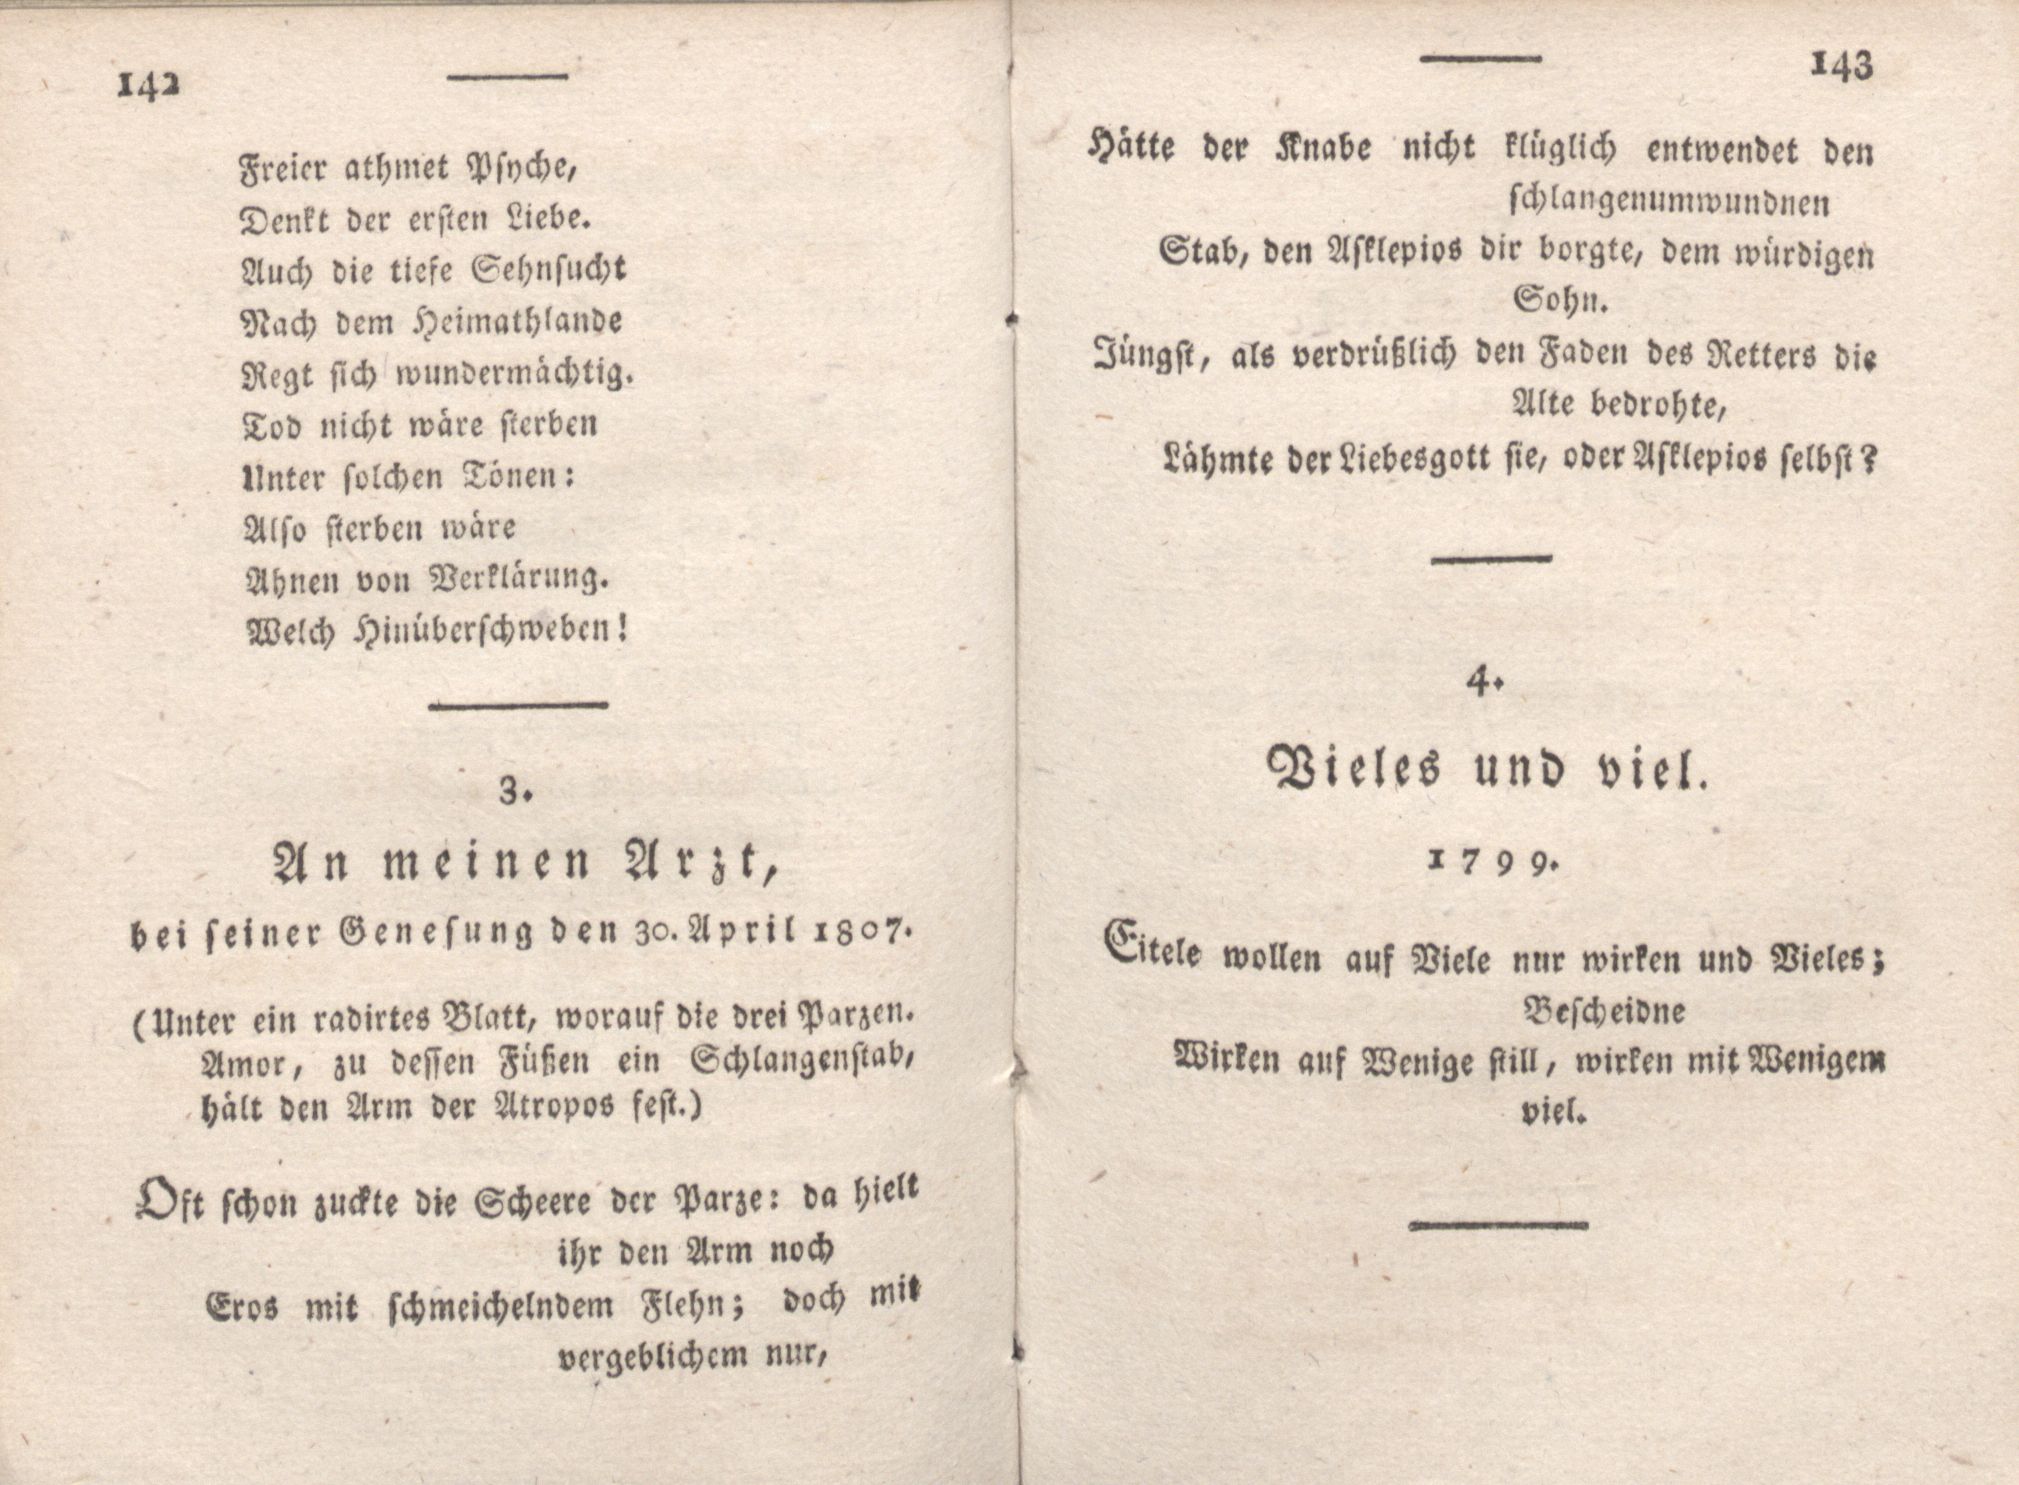 Livona [2] (1815) | 92. (142-143) Main body of text